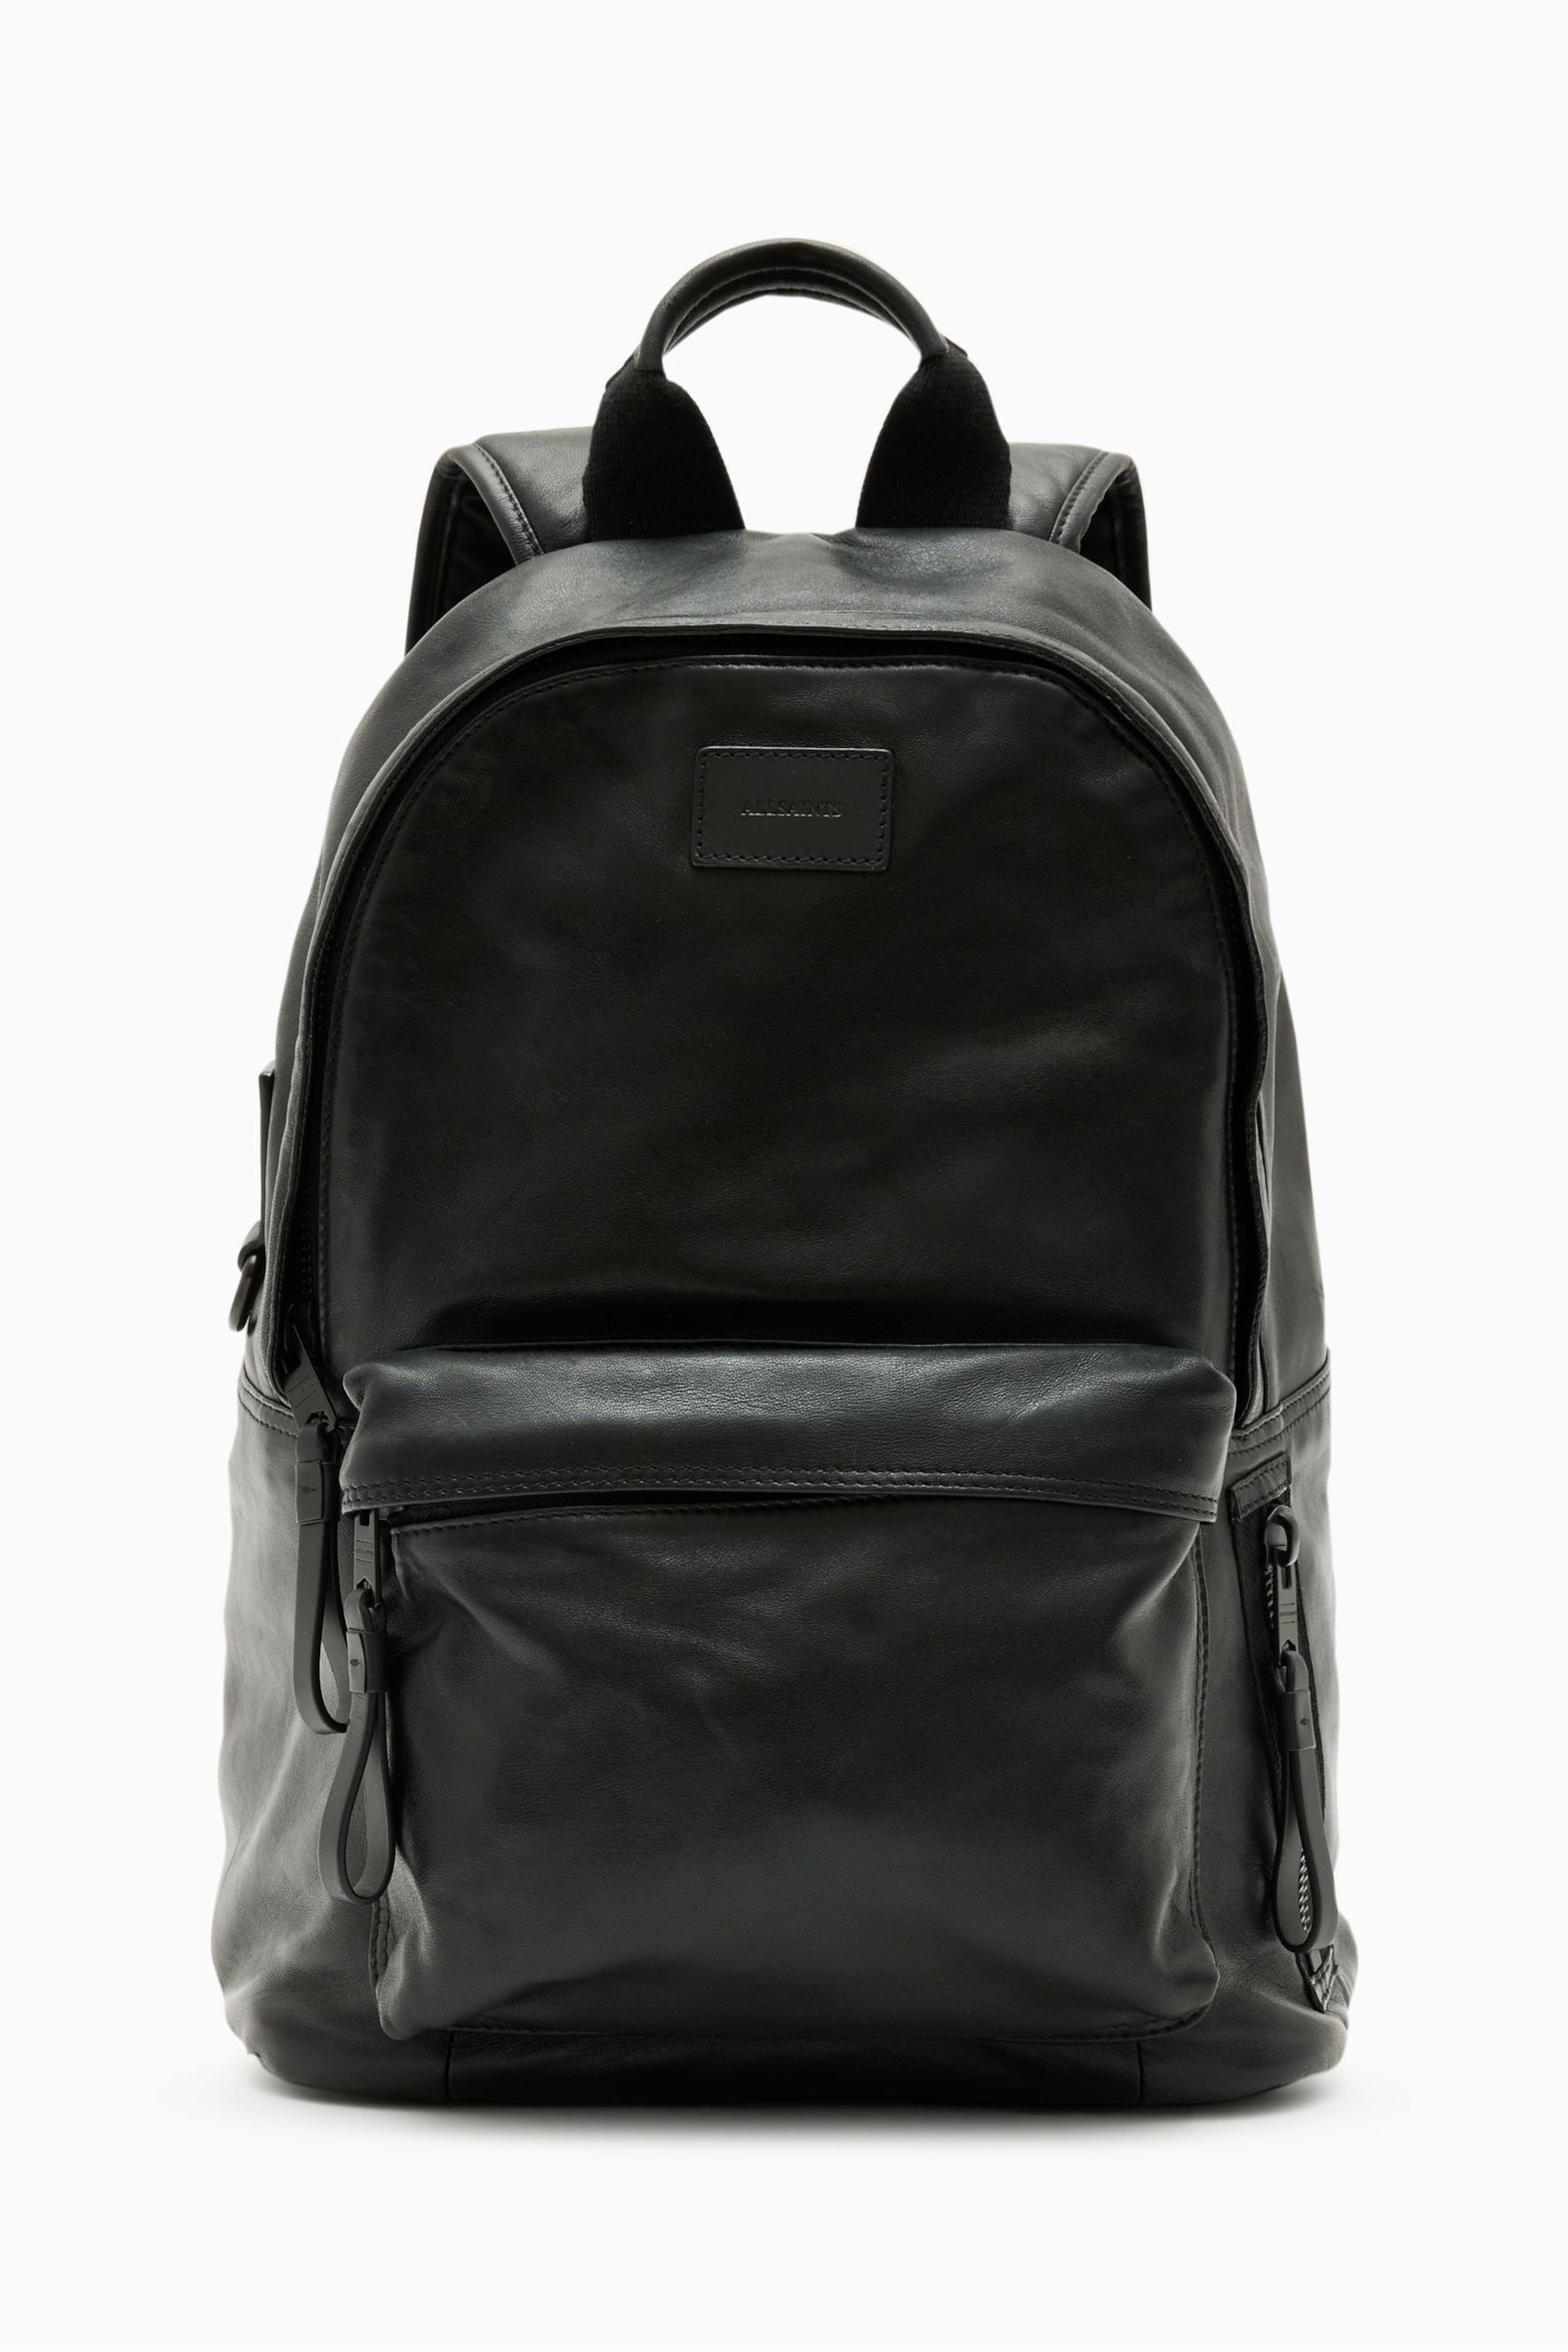 AllSaints Black Carabiner Backpack - Image 2 of 7